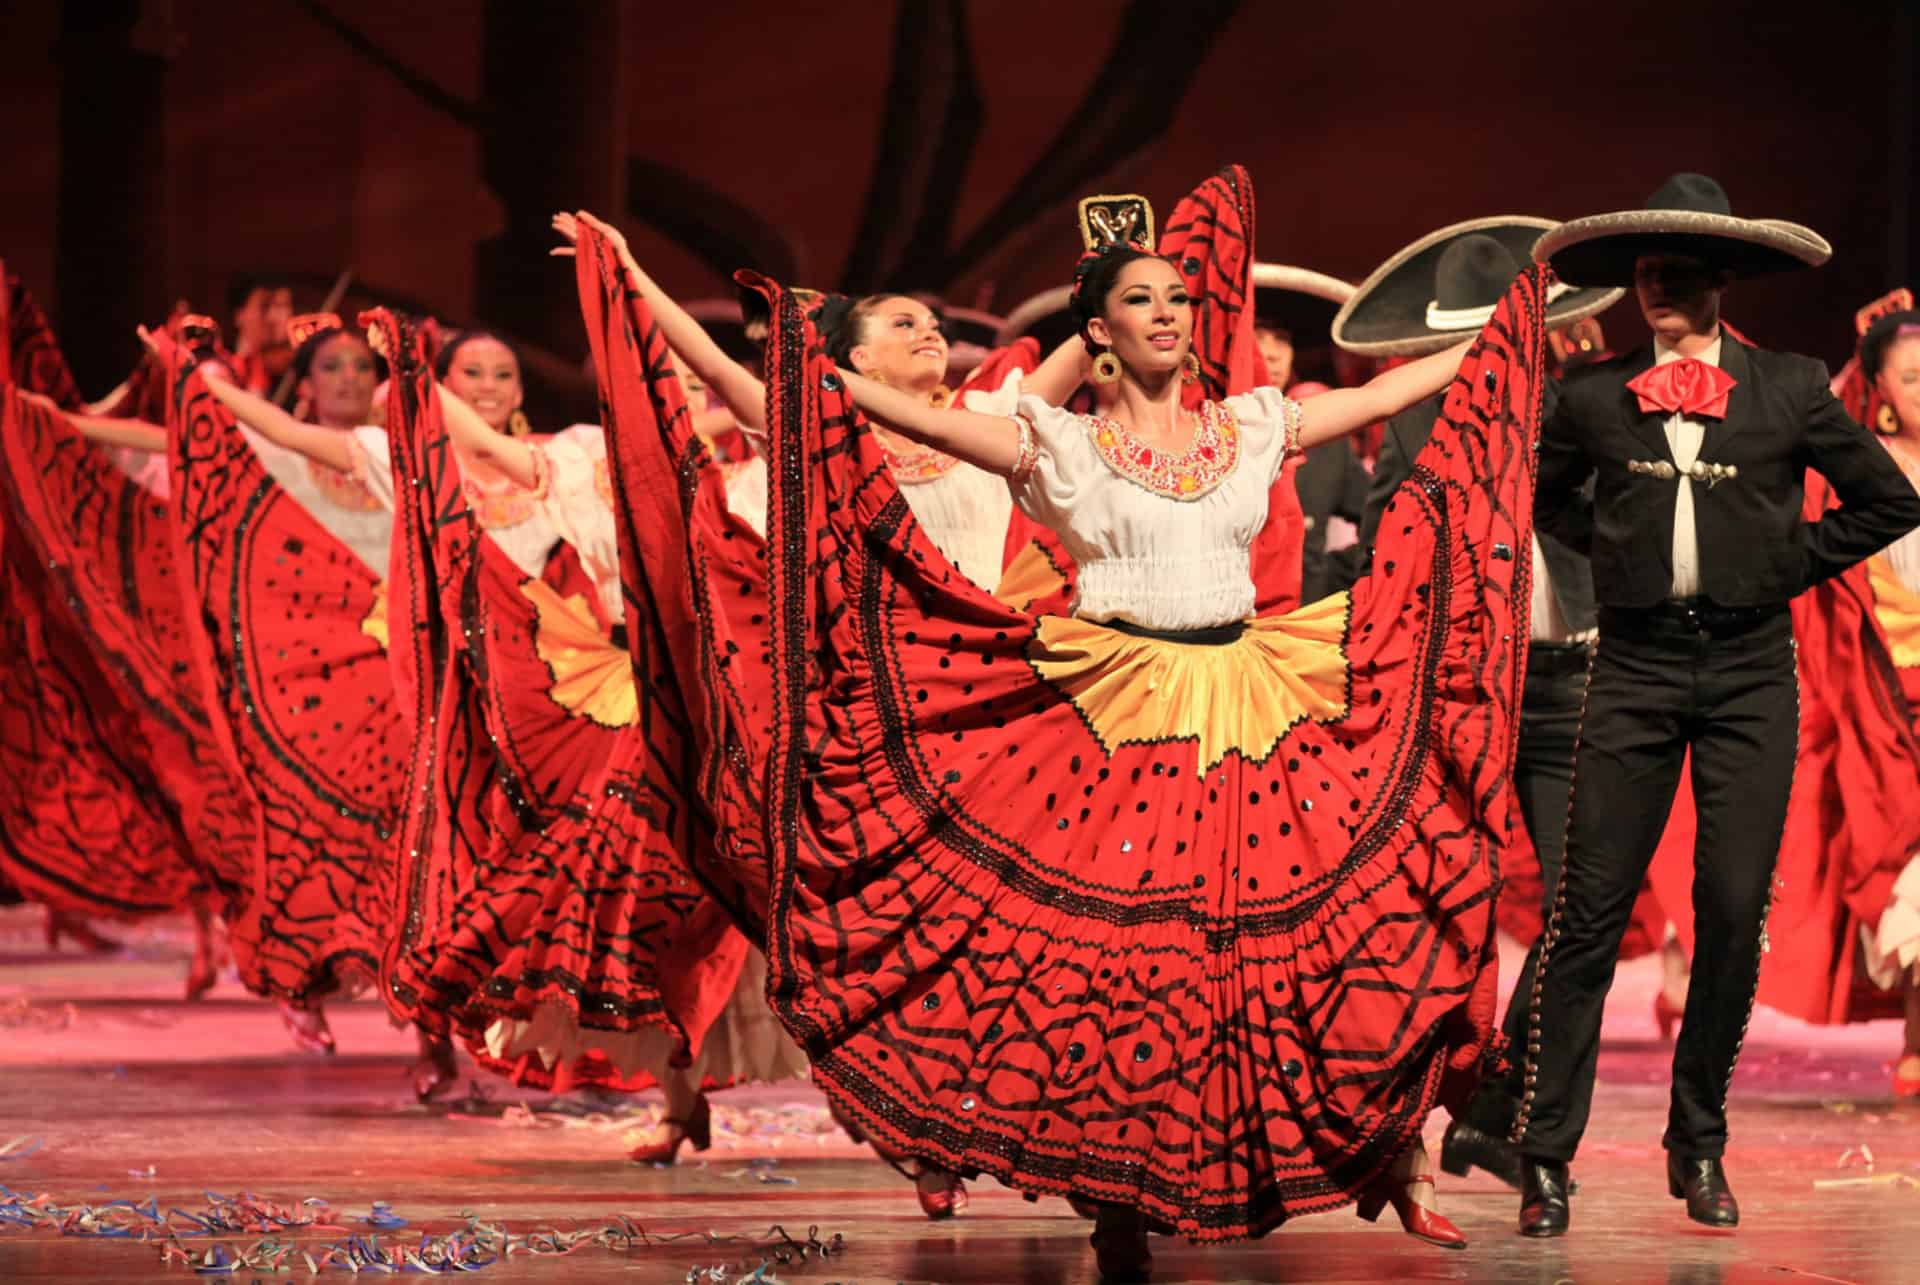 spectacle folklorique mexico